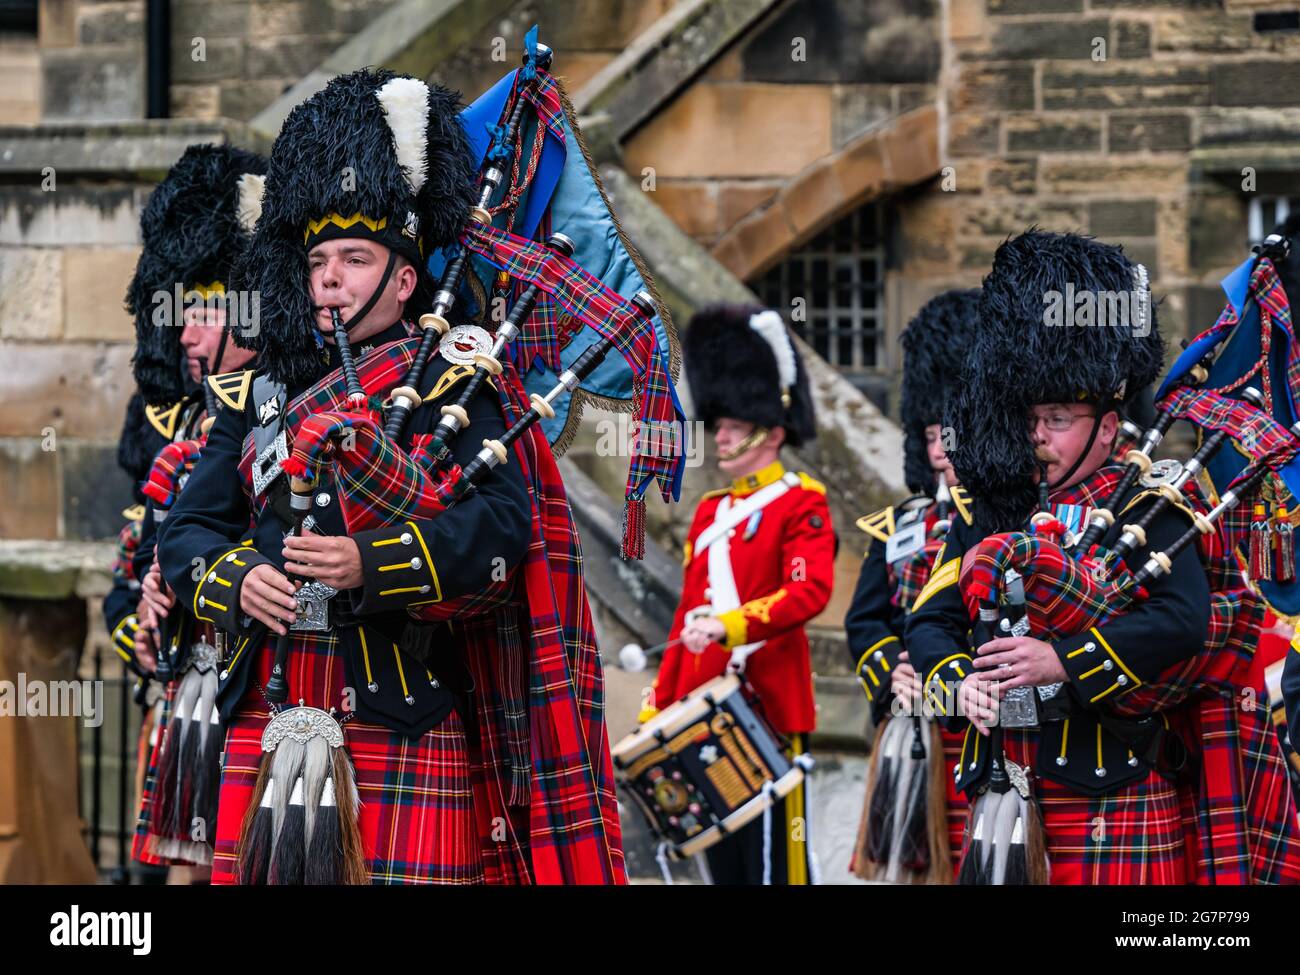 Royal Scots Guards militari pipers che giocano cornamuse in chilt uniformi al Castello di Edimburgo in una cerimonia militare, Scozia, Regno Unito Foto Stock